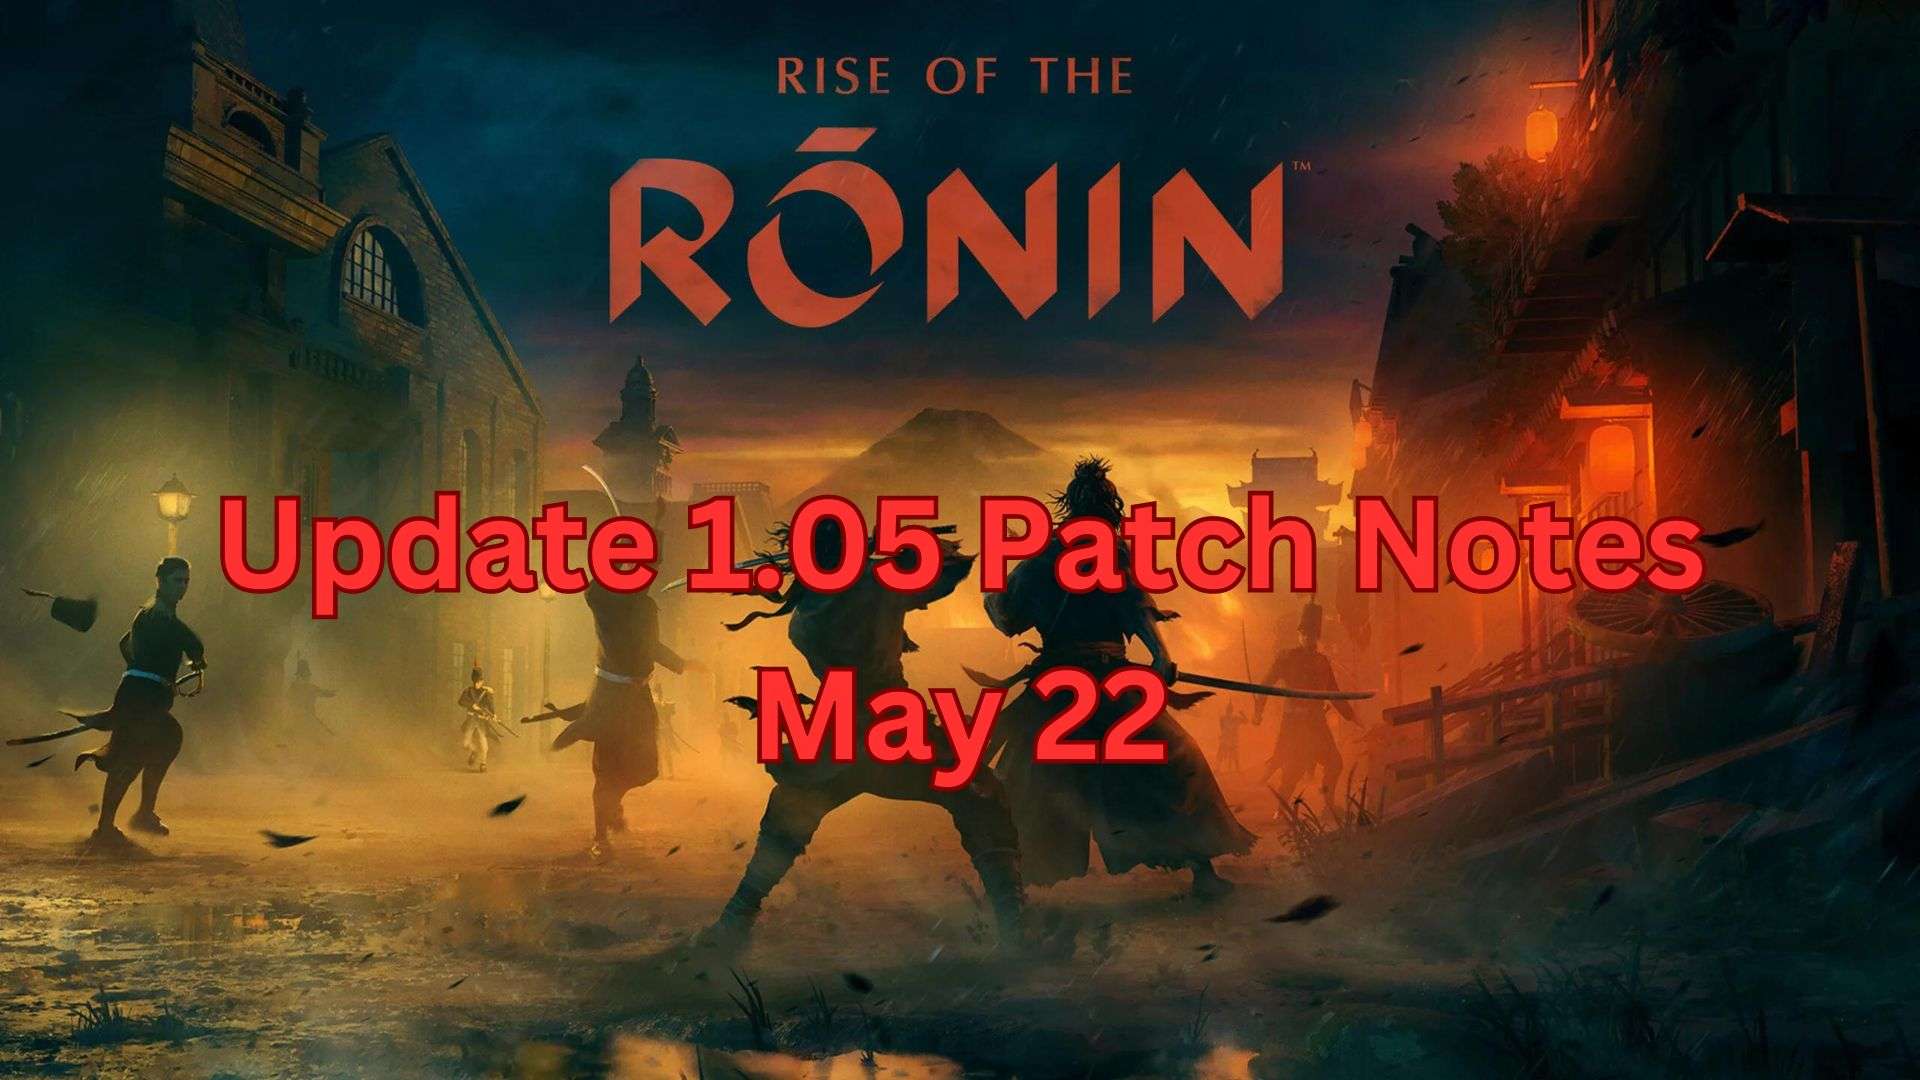 Примечания к обновлению 1.05 для Rise of the Ronin обширны, подробная информация здесь